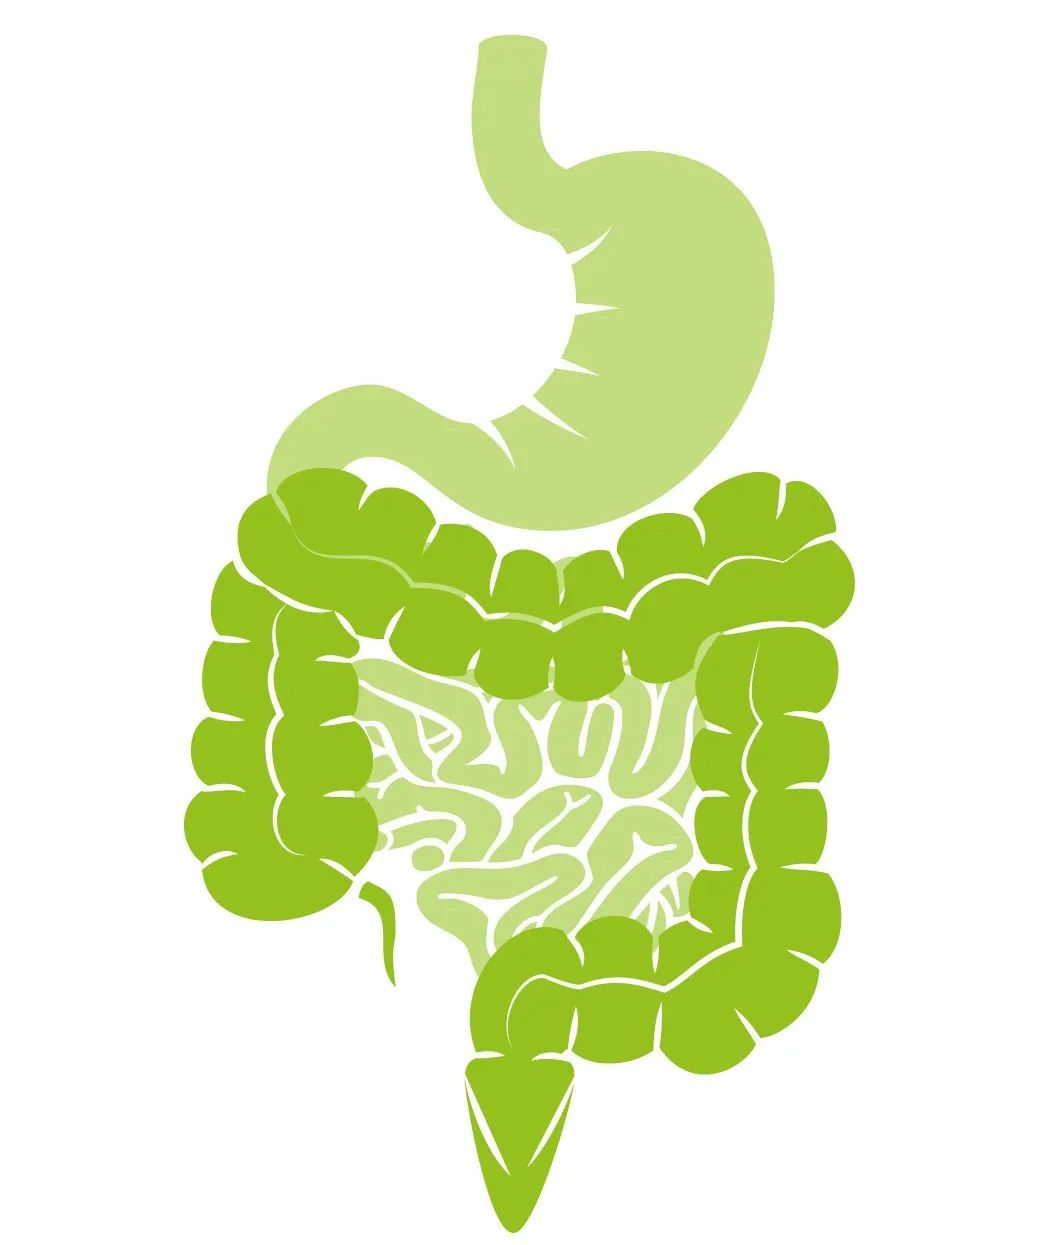 在前面我们说过,肠壁有三个重要的功能:首先,消化食物和吸收营养;第二